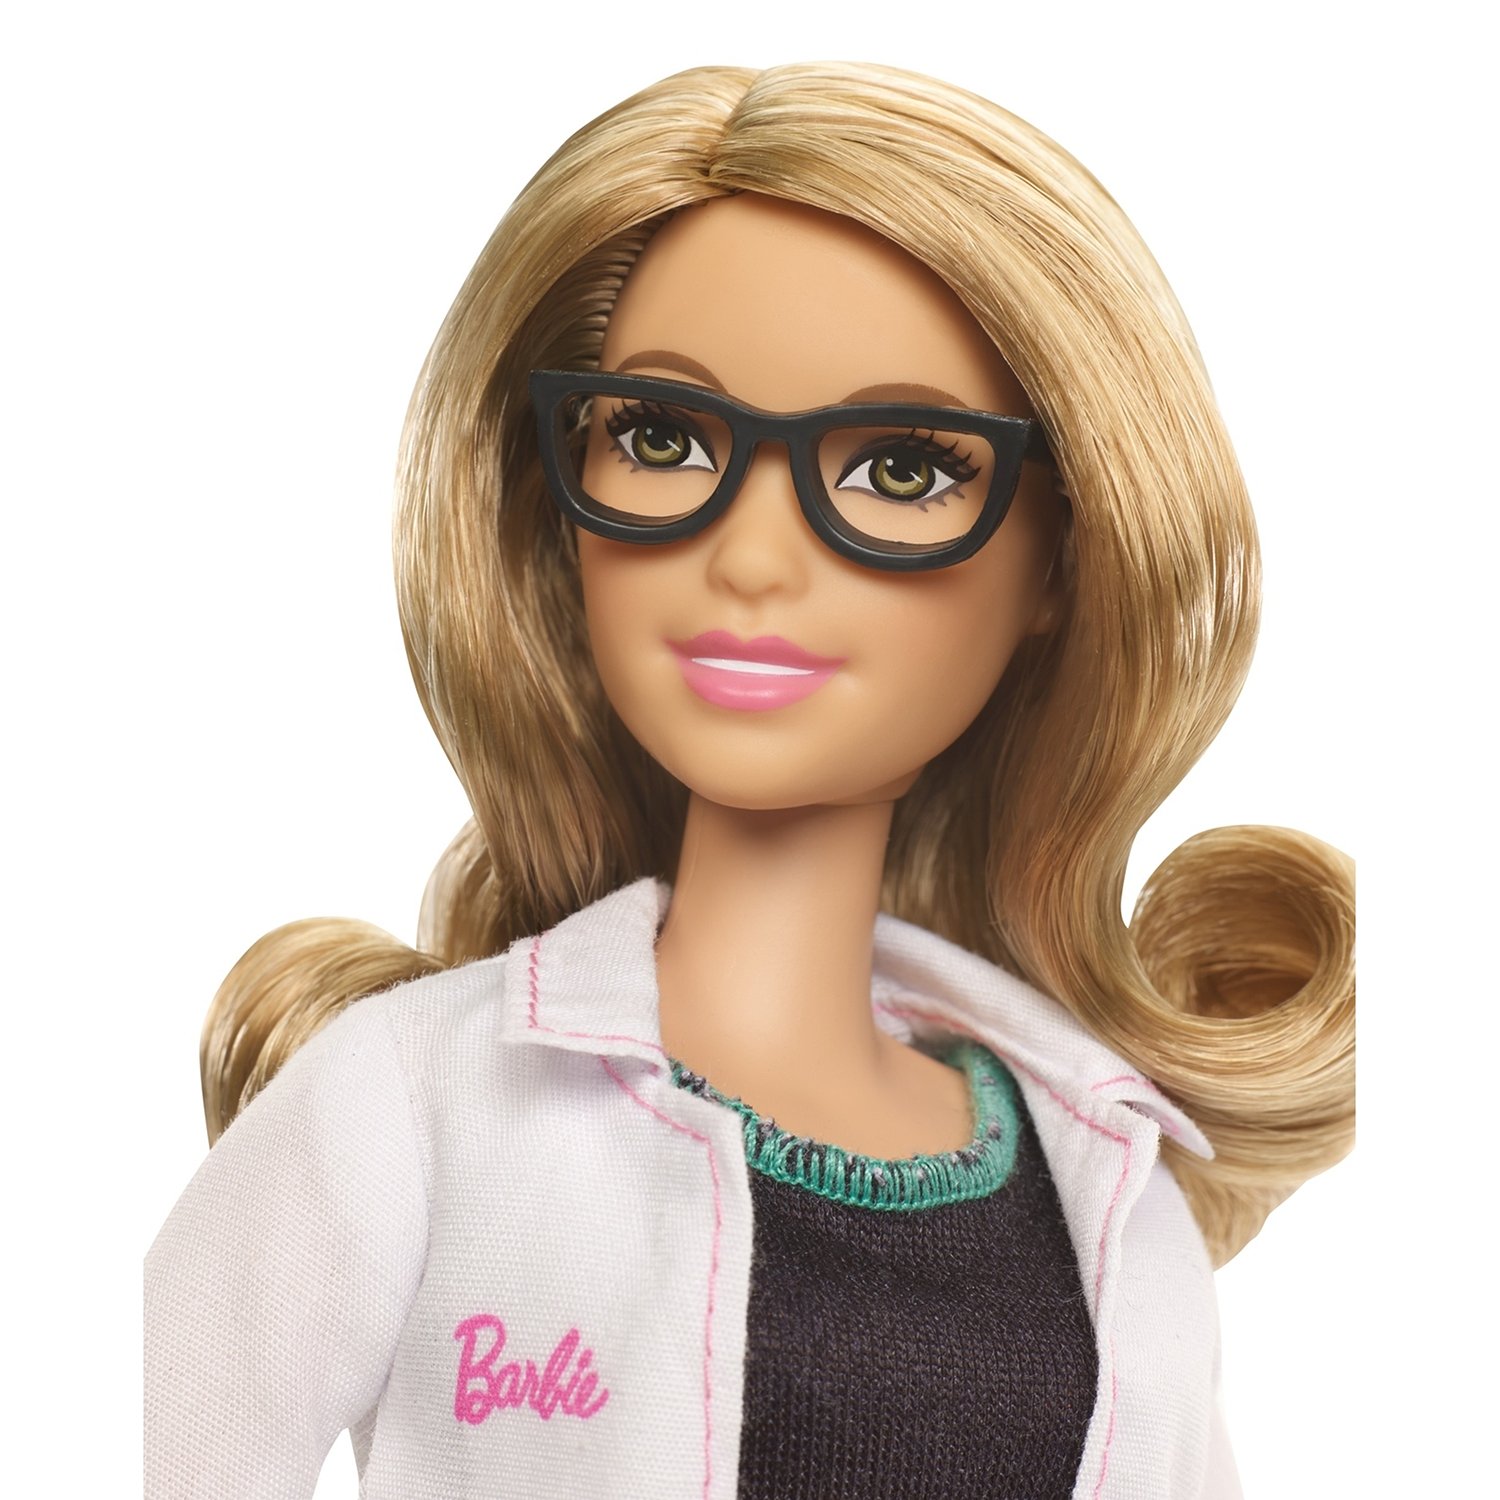 Кукла Barbie Кем быть? Офтальмолог, 28 см, FMT48